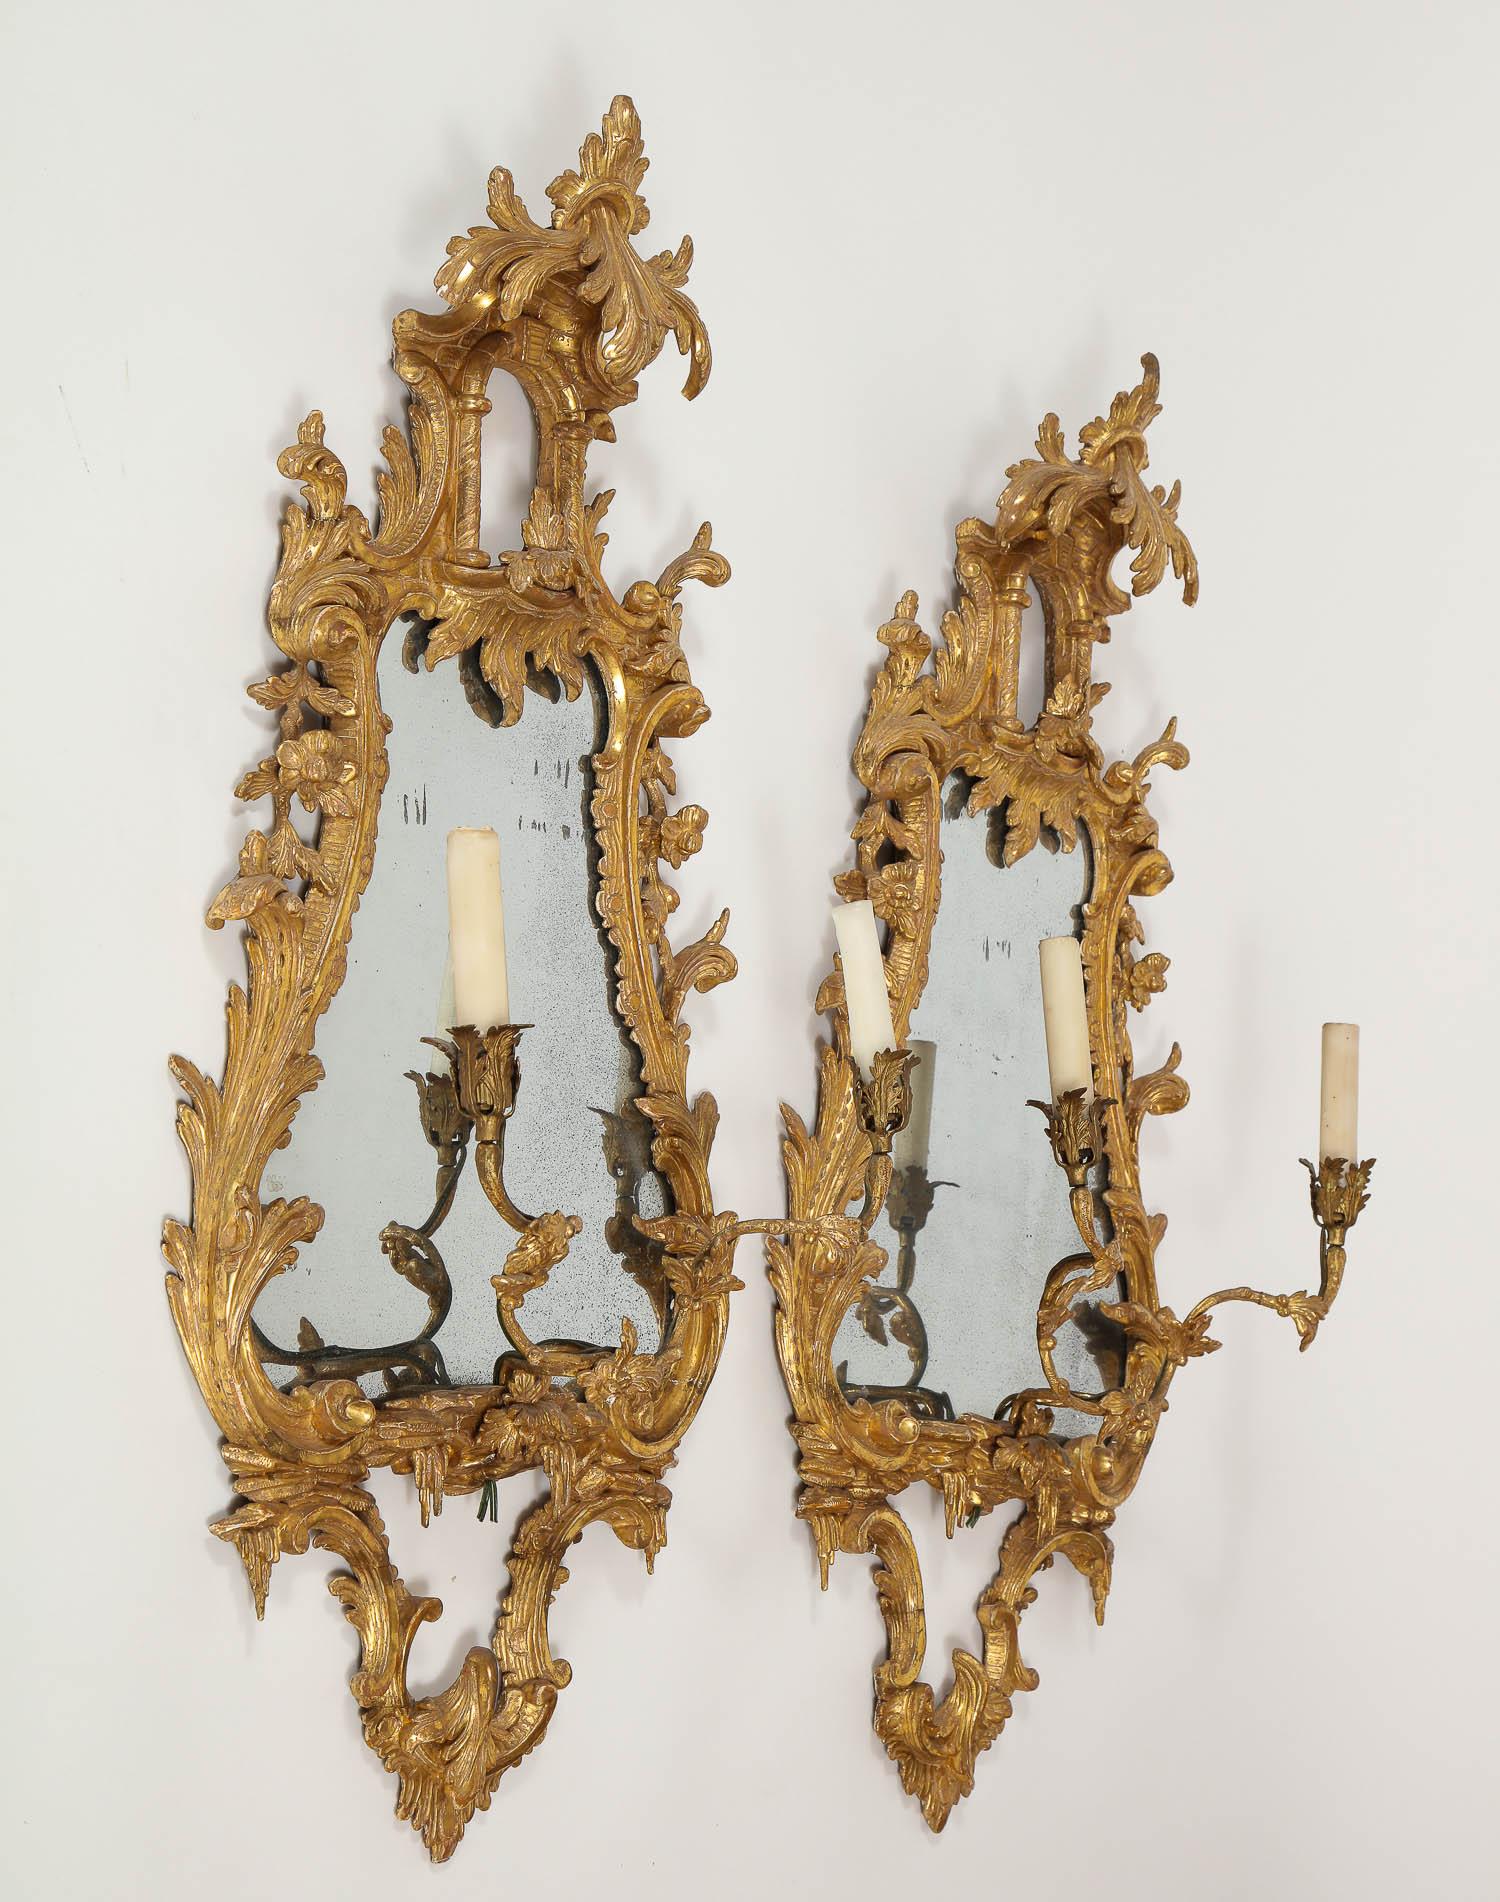 Schöne Paar antike 18. Jahrhundert George II Chinoiserie Englisch geschnitzt Vergoldung Spiegel mit Kerzenhaltern. Diese prächtigen, handgeschnitzten Spiegel aus Goldholz sind sehr detailliert und mit Akanthusblättern verziert, die den Rahmen mit